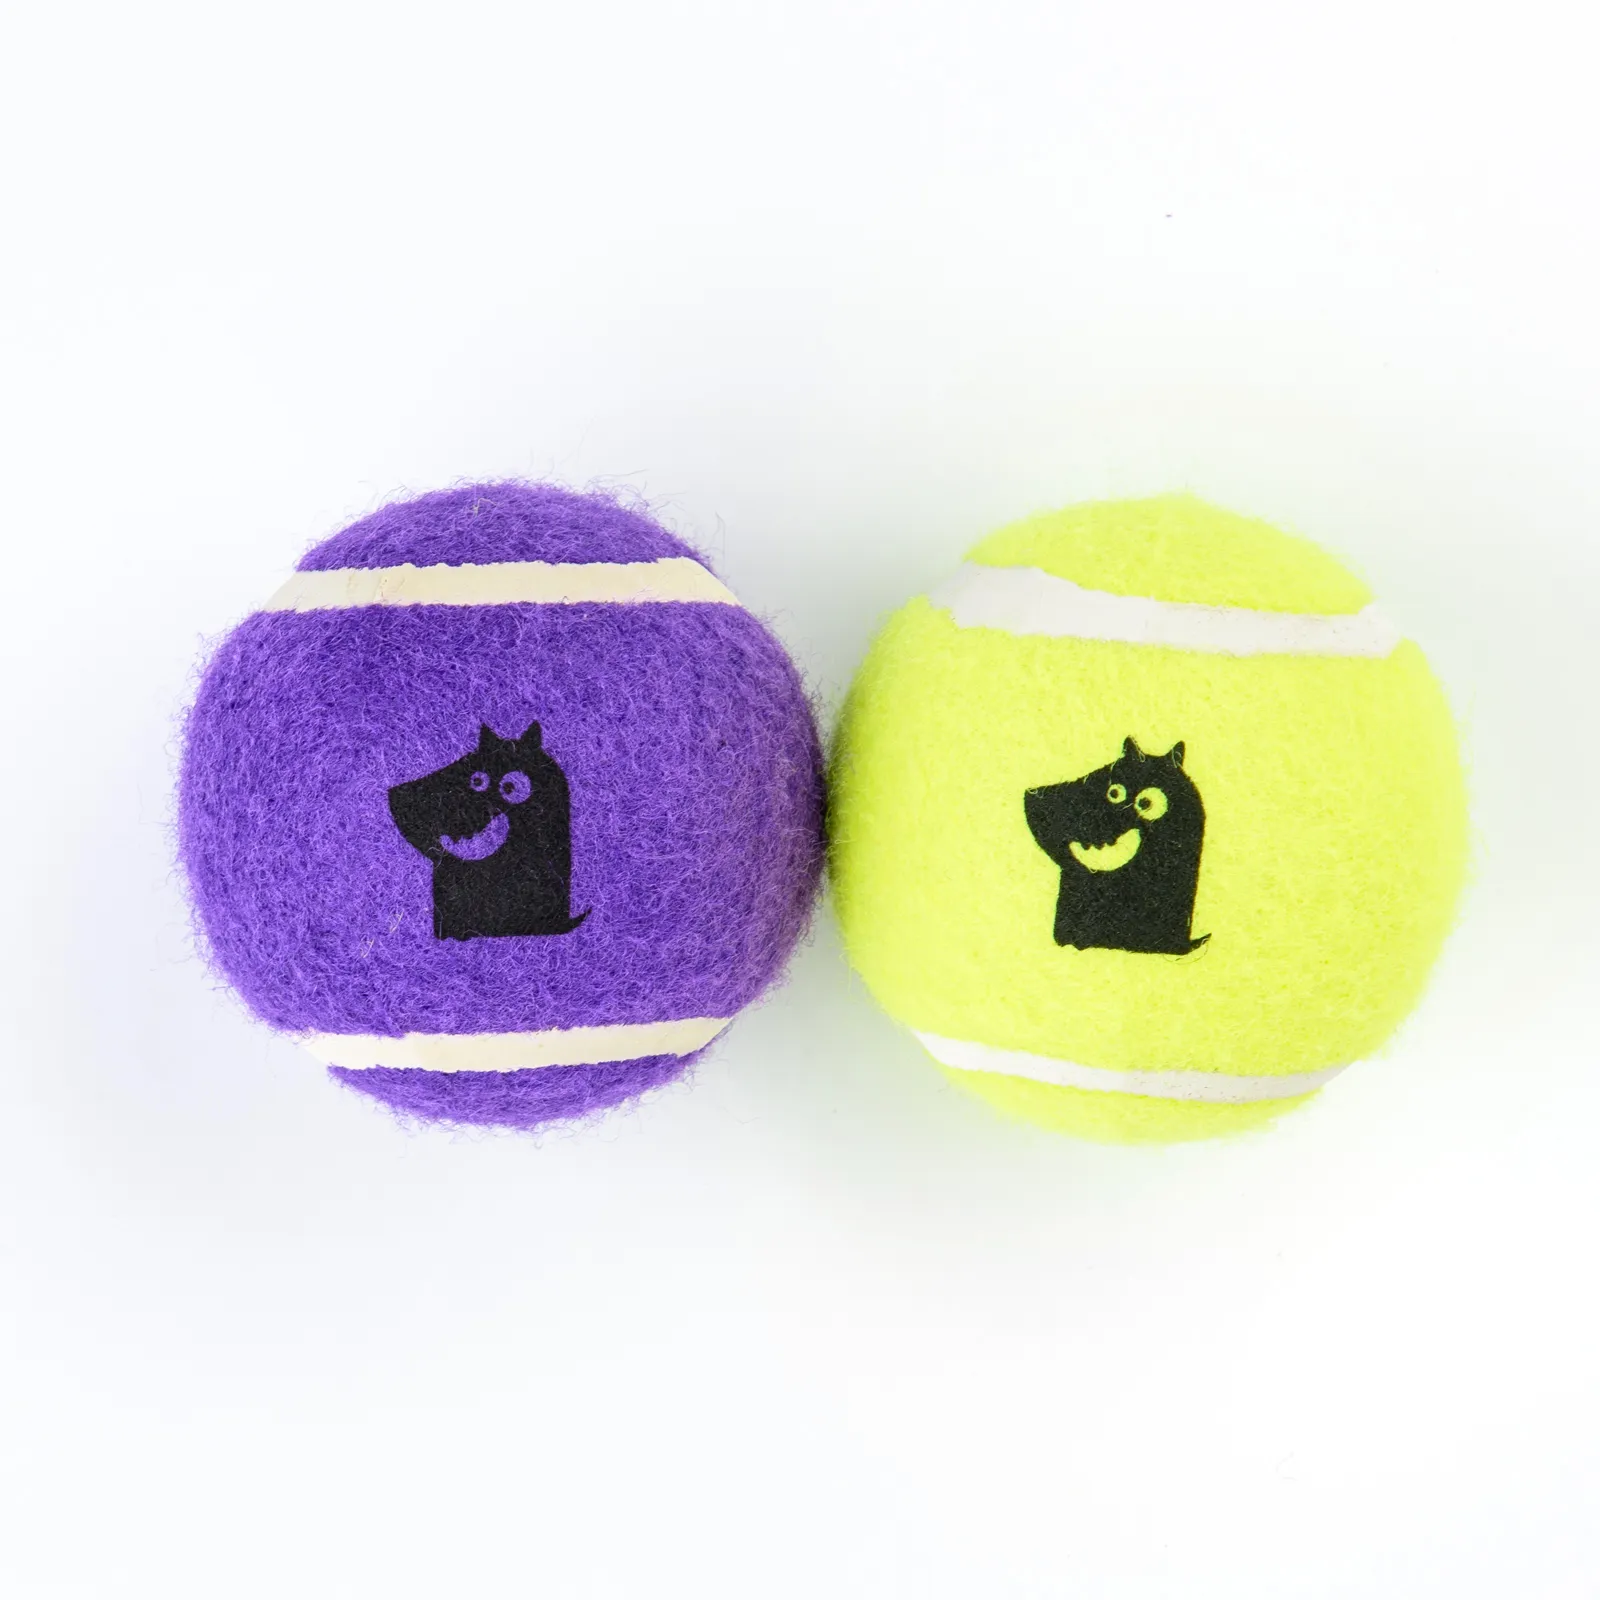 Игрушка Mr.Kranch для собак Теннисный мяч малый 5 см набор 2 шт. желтый/фиолетовый